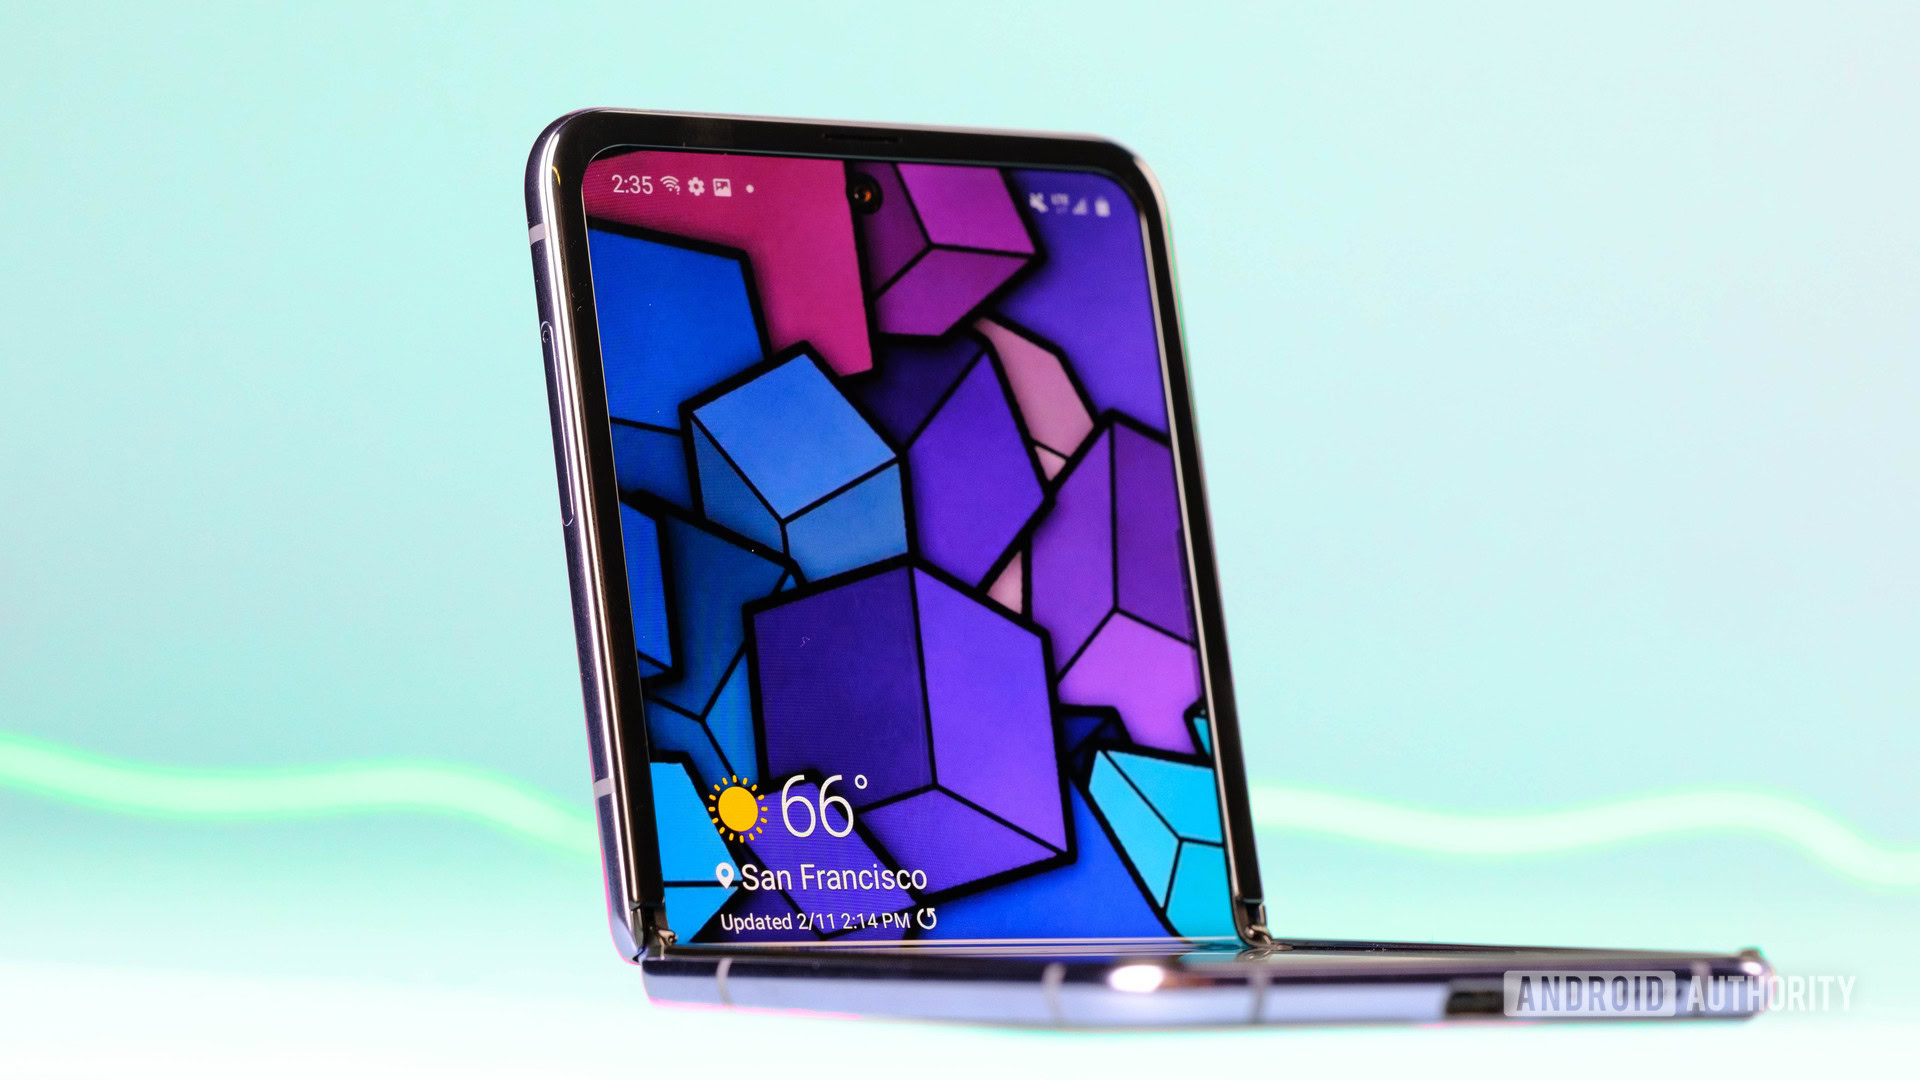 Hãy khám phá bộ ảnh nền mới nhất cho Samsung Galaxy Z Flip - màn hình của bạn sẽ trở nên vô cùng độc đáo và tuyệt đẹp. Với vô số mẫu mã và phong cách khác nhau, bạn sẽ tìm thấy bức ảnh nền phù hợp với cá tính của mình.